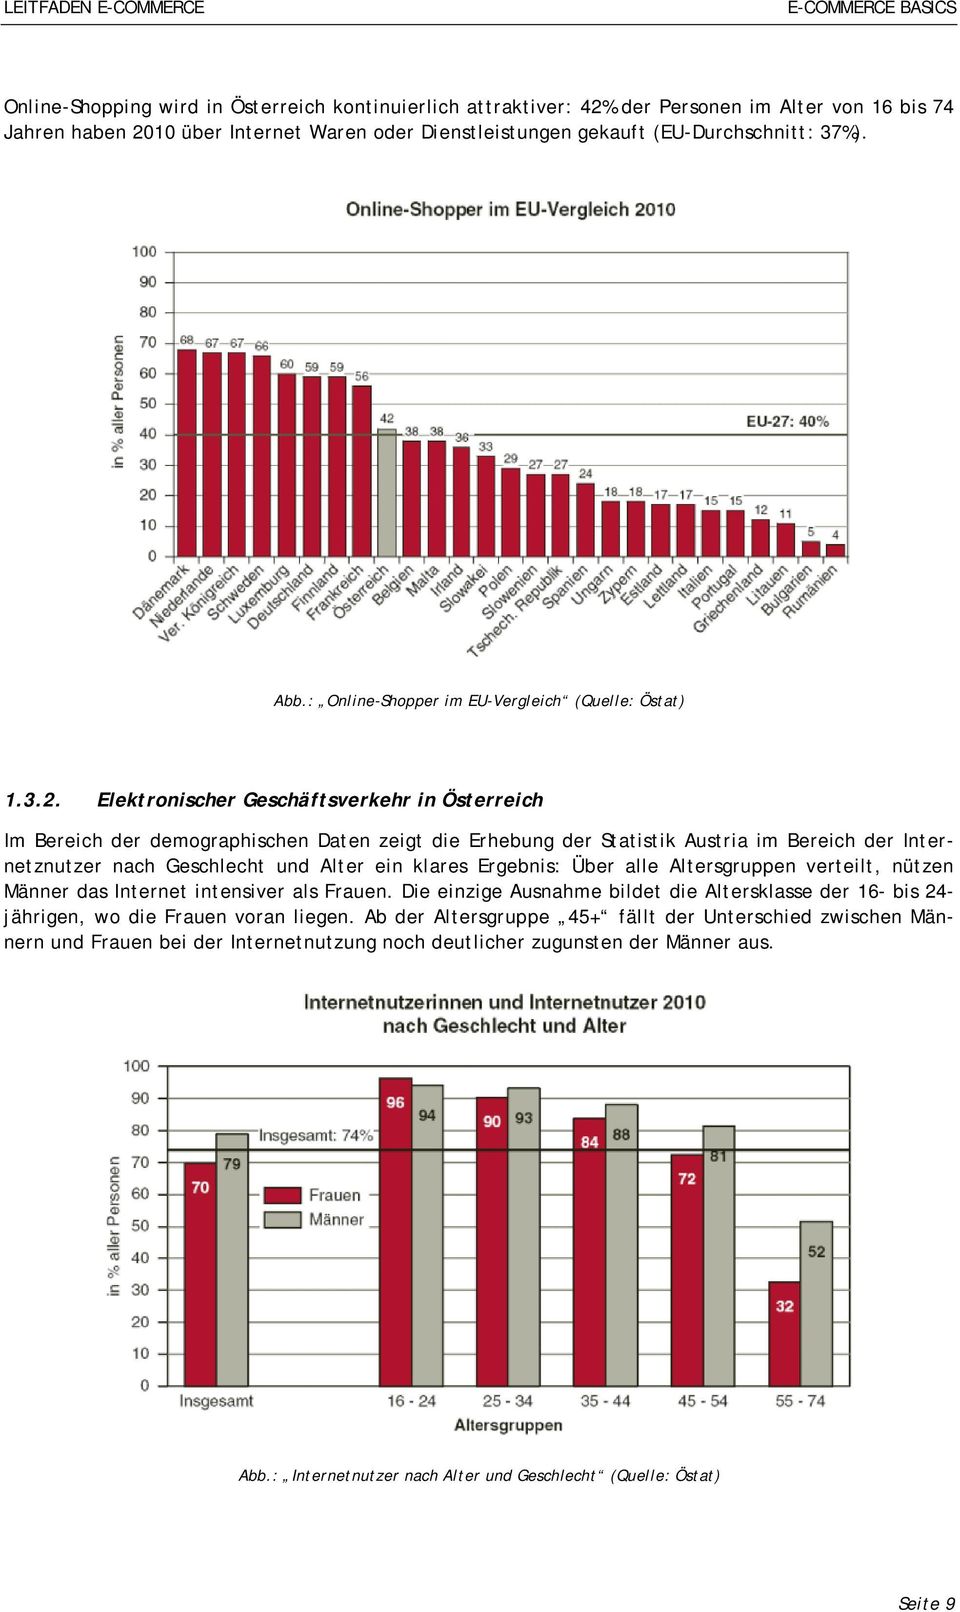 Elektronischer Geschäftsverkehr in Österreich Im Bereich der demographischen Daten zeigt die Erhebung der Statistik Austria im Bereich der Internetznutzer nach Geschlecht und Alter ein klares